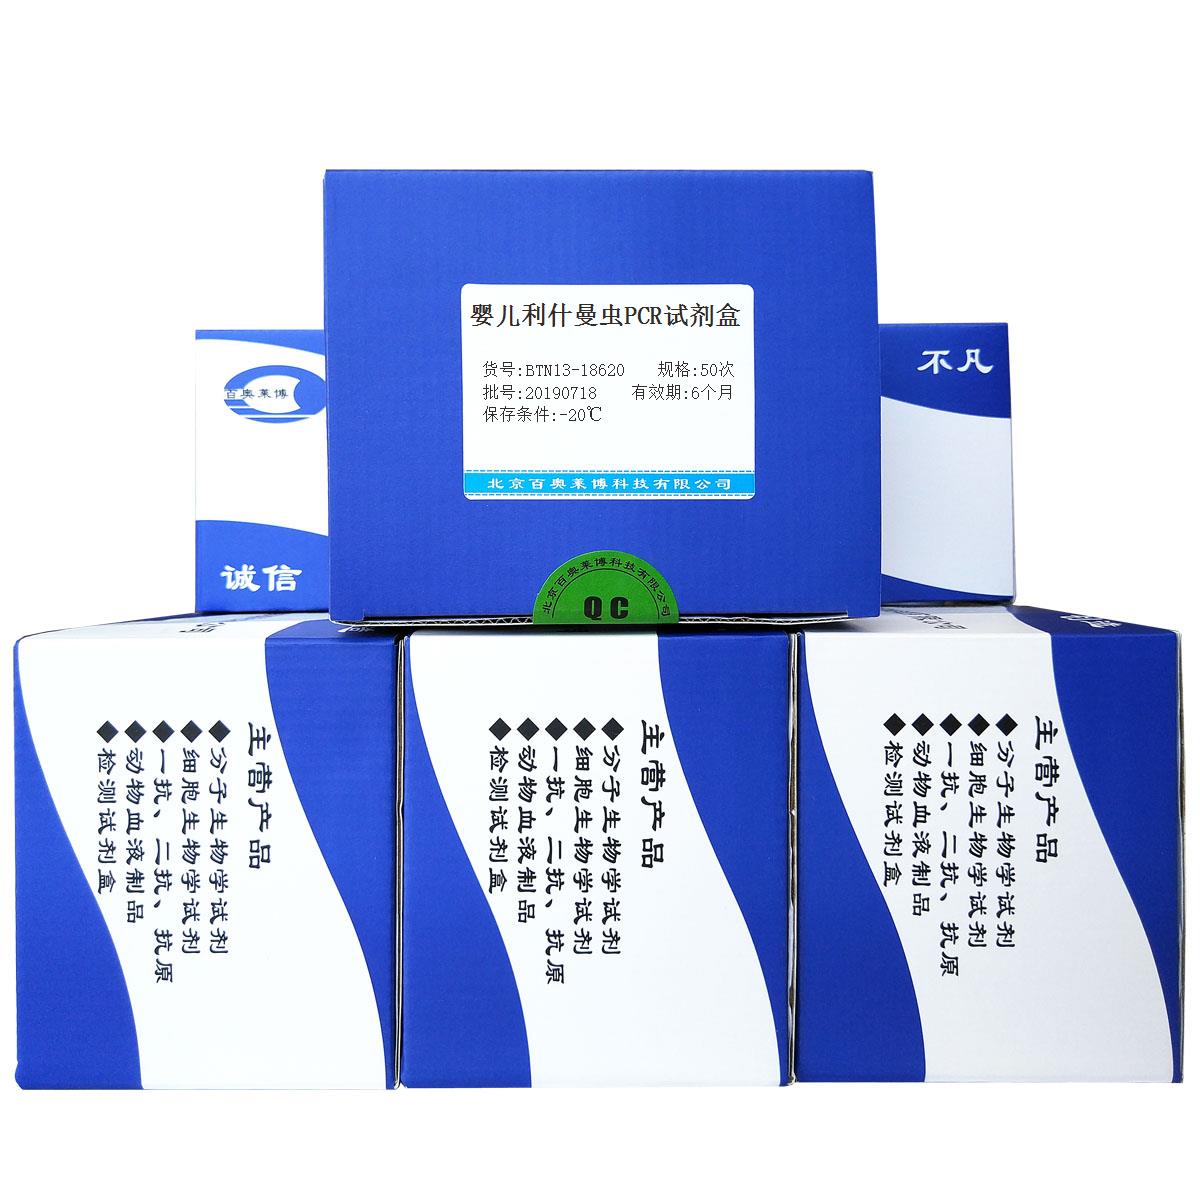 婴儿利什曼虫PCR试剂盒北京品牌